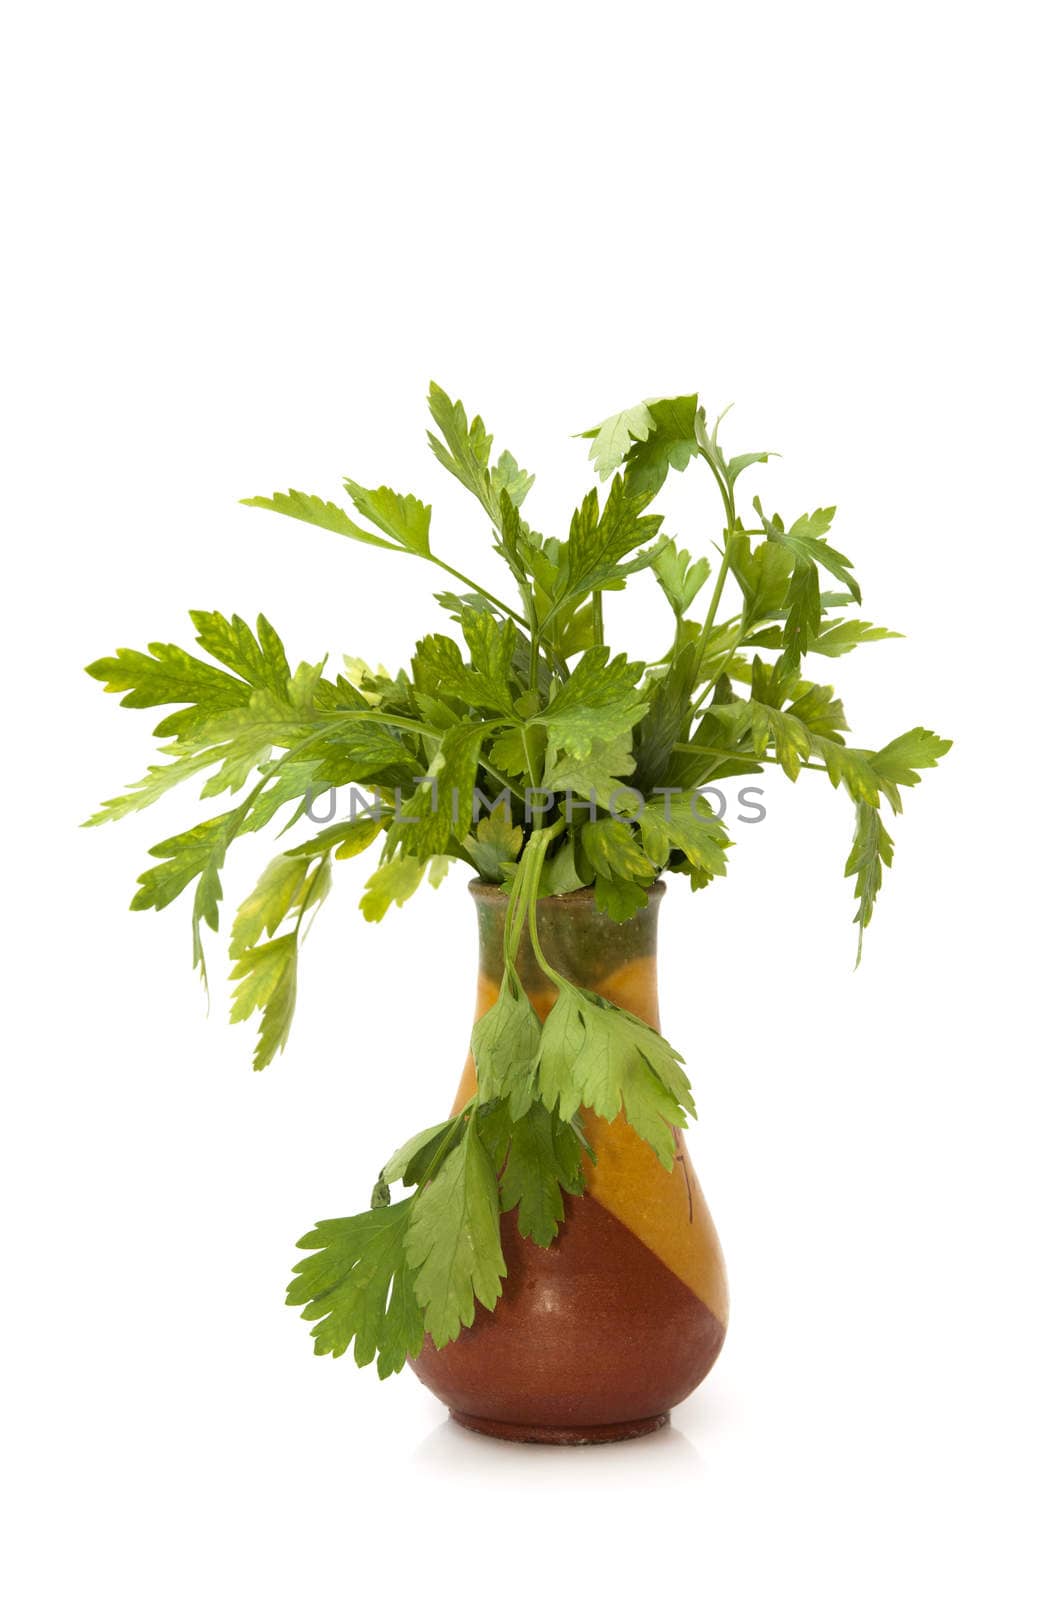 parsley pot by arnau2098